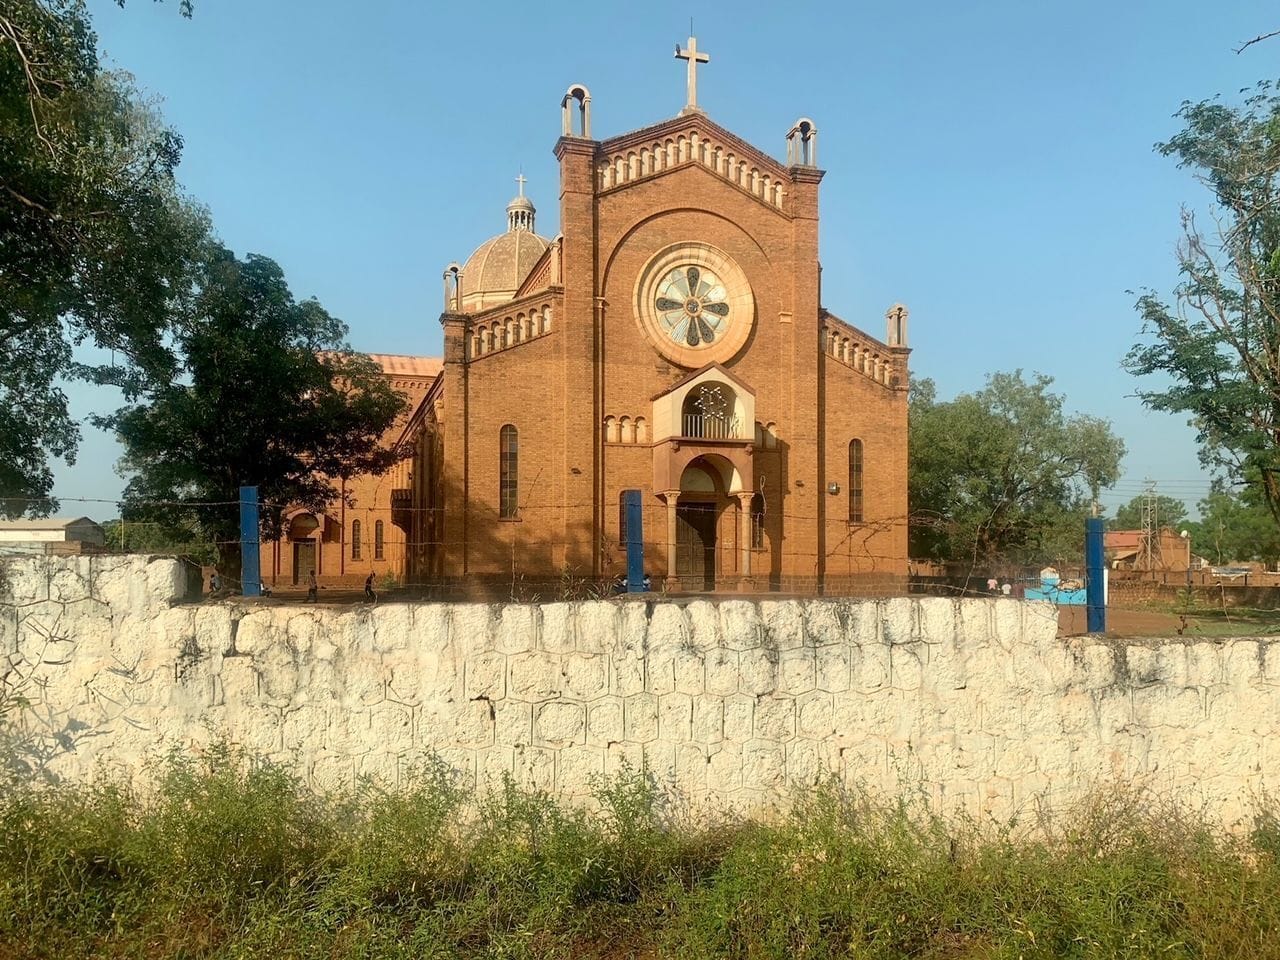 In die Kirche in Juba flüchteten sich während des Bürgerkriegs viele Menschen.